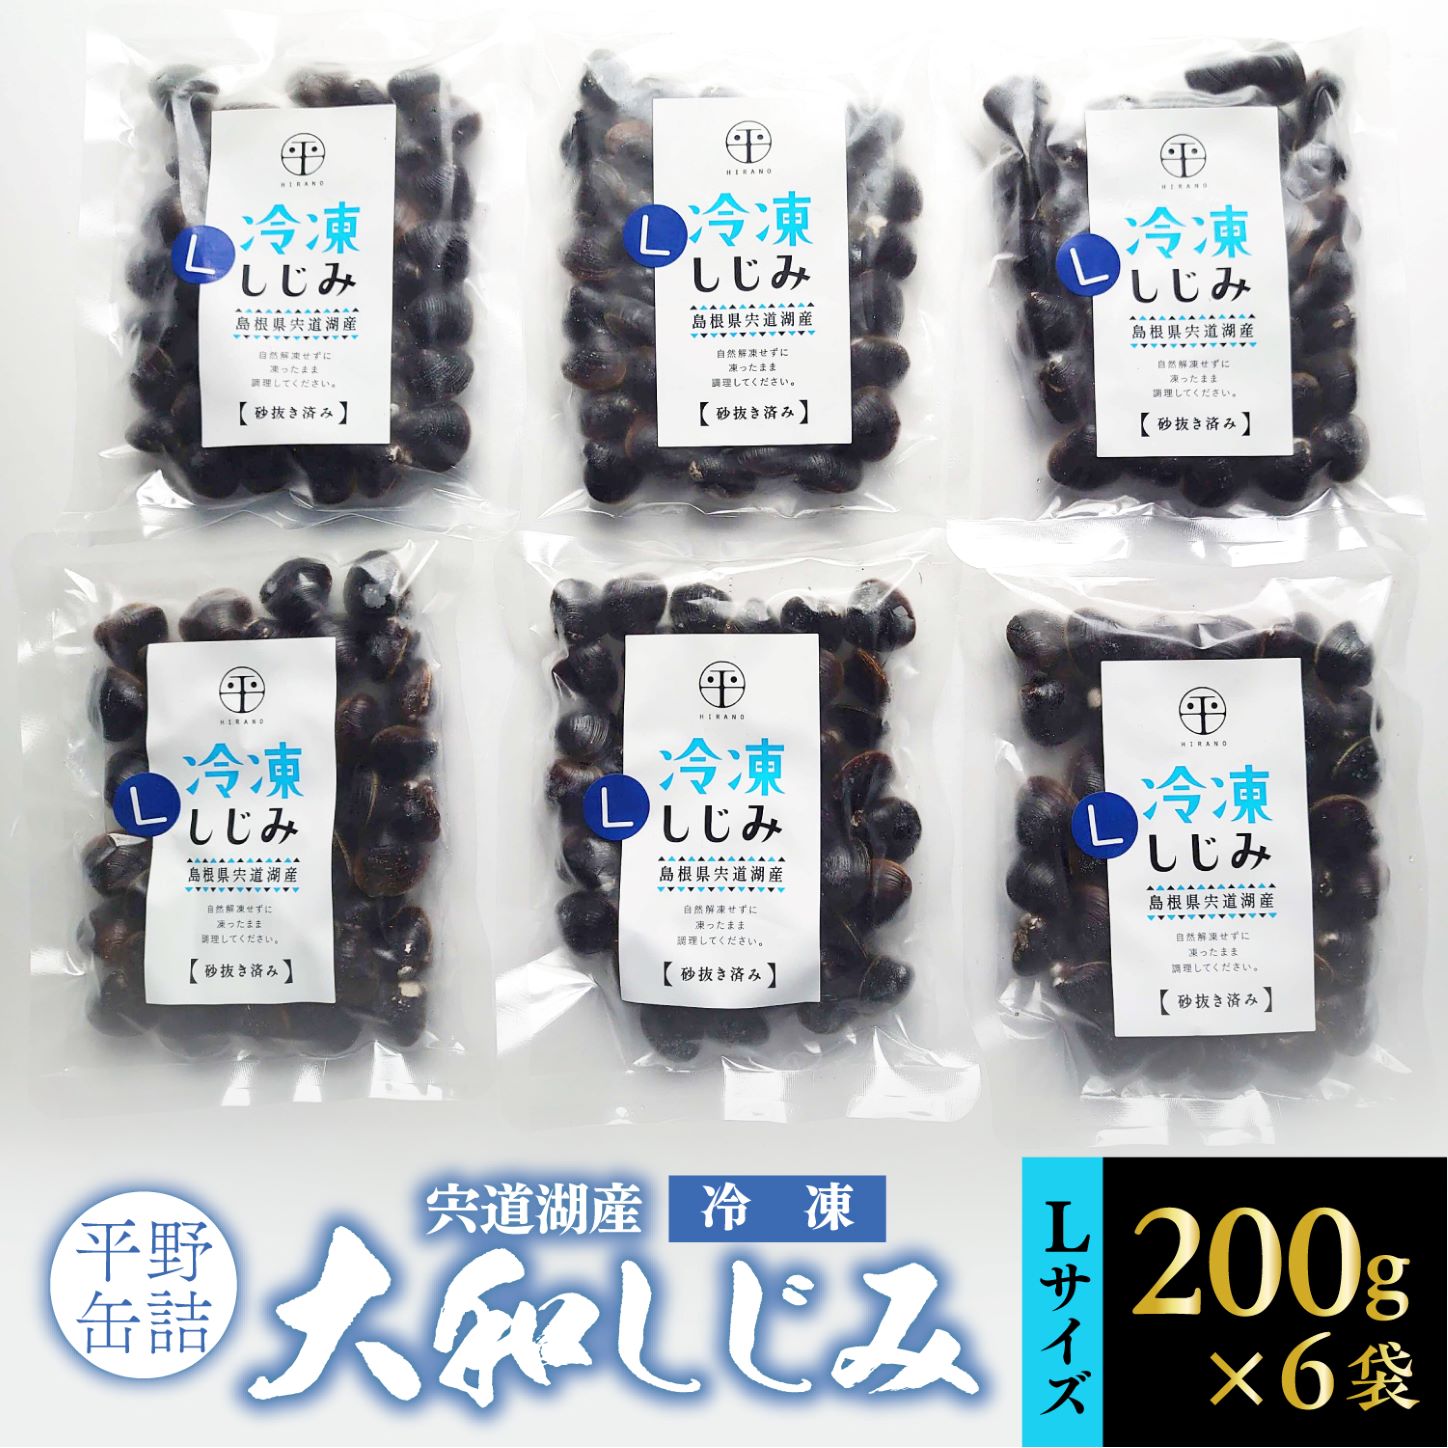 【ふるさと納税】宍道湖産冷凍大和しじみ (L)200g×6袋